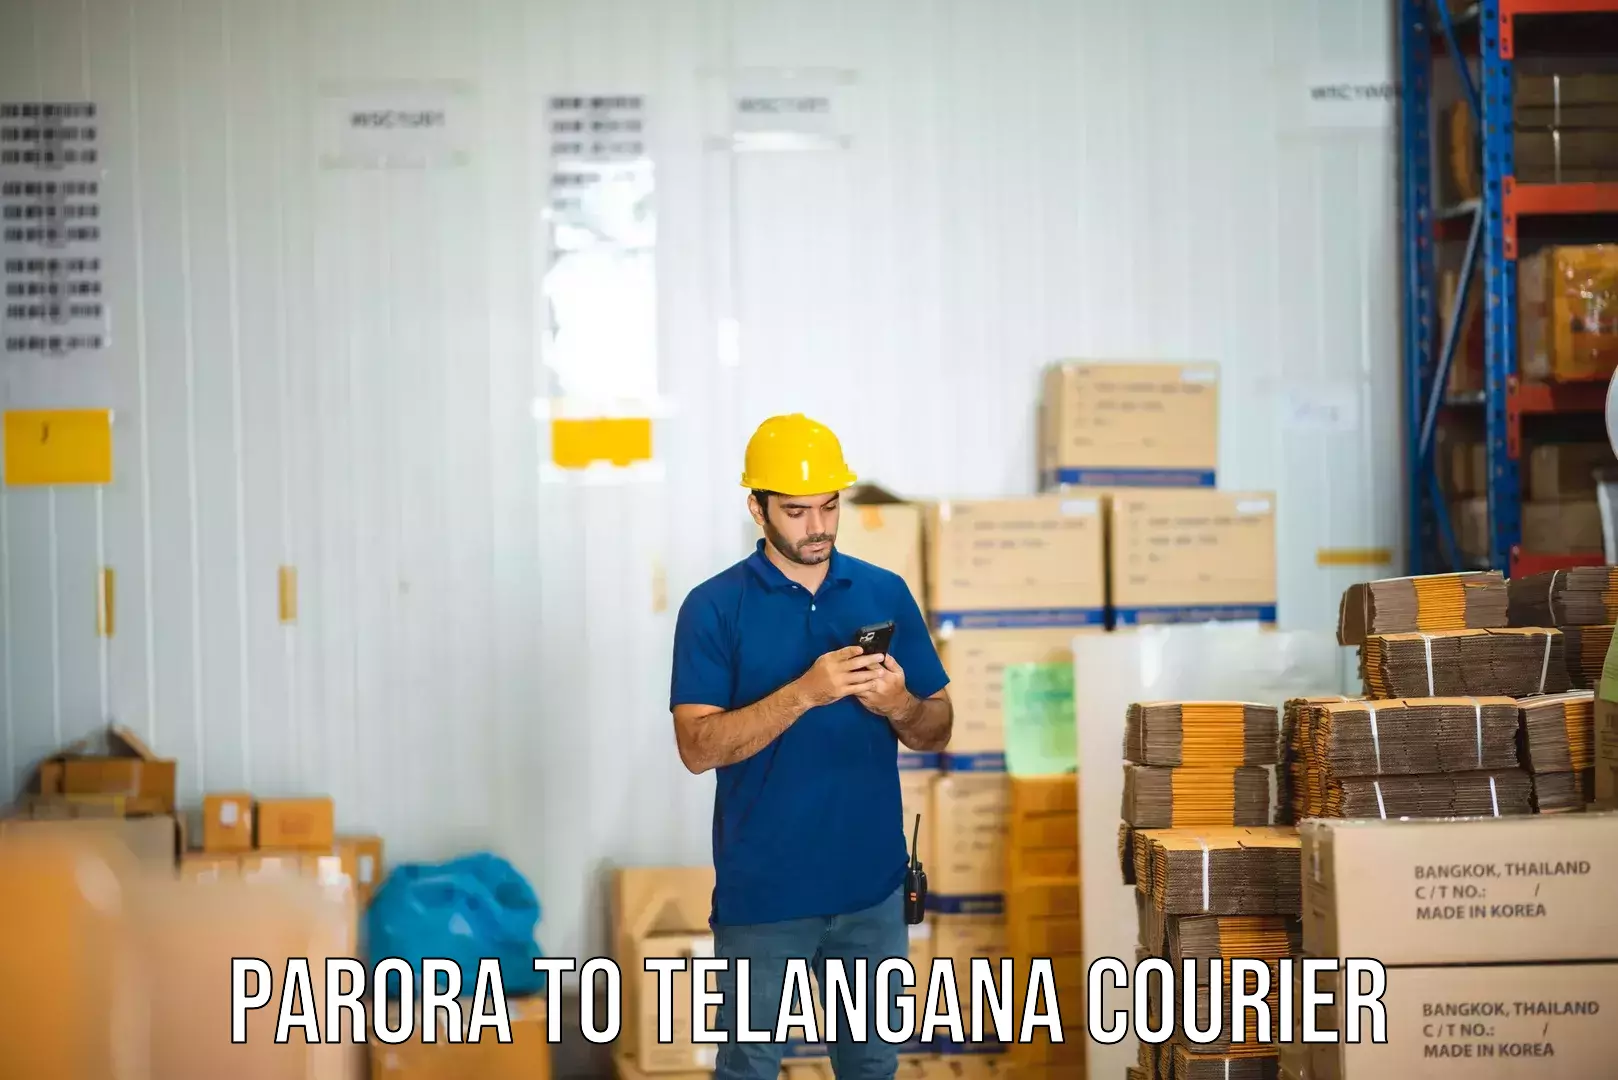 Nationwide shipping capabilities Parora to Telangana